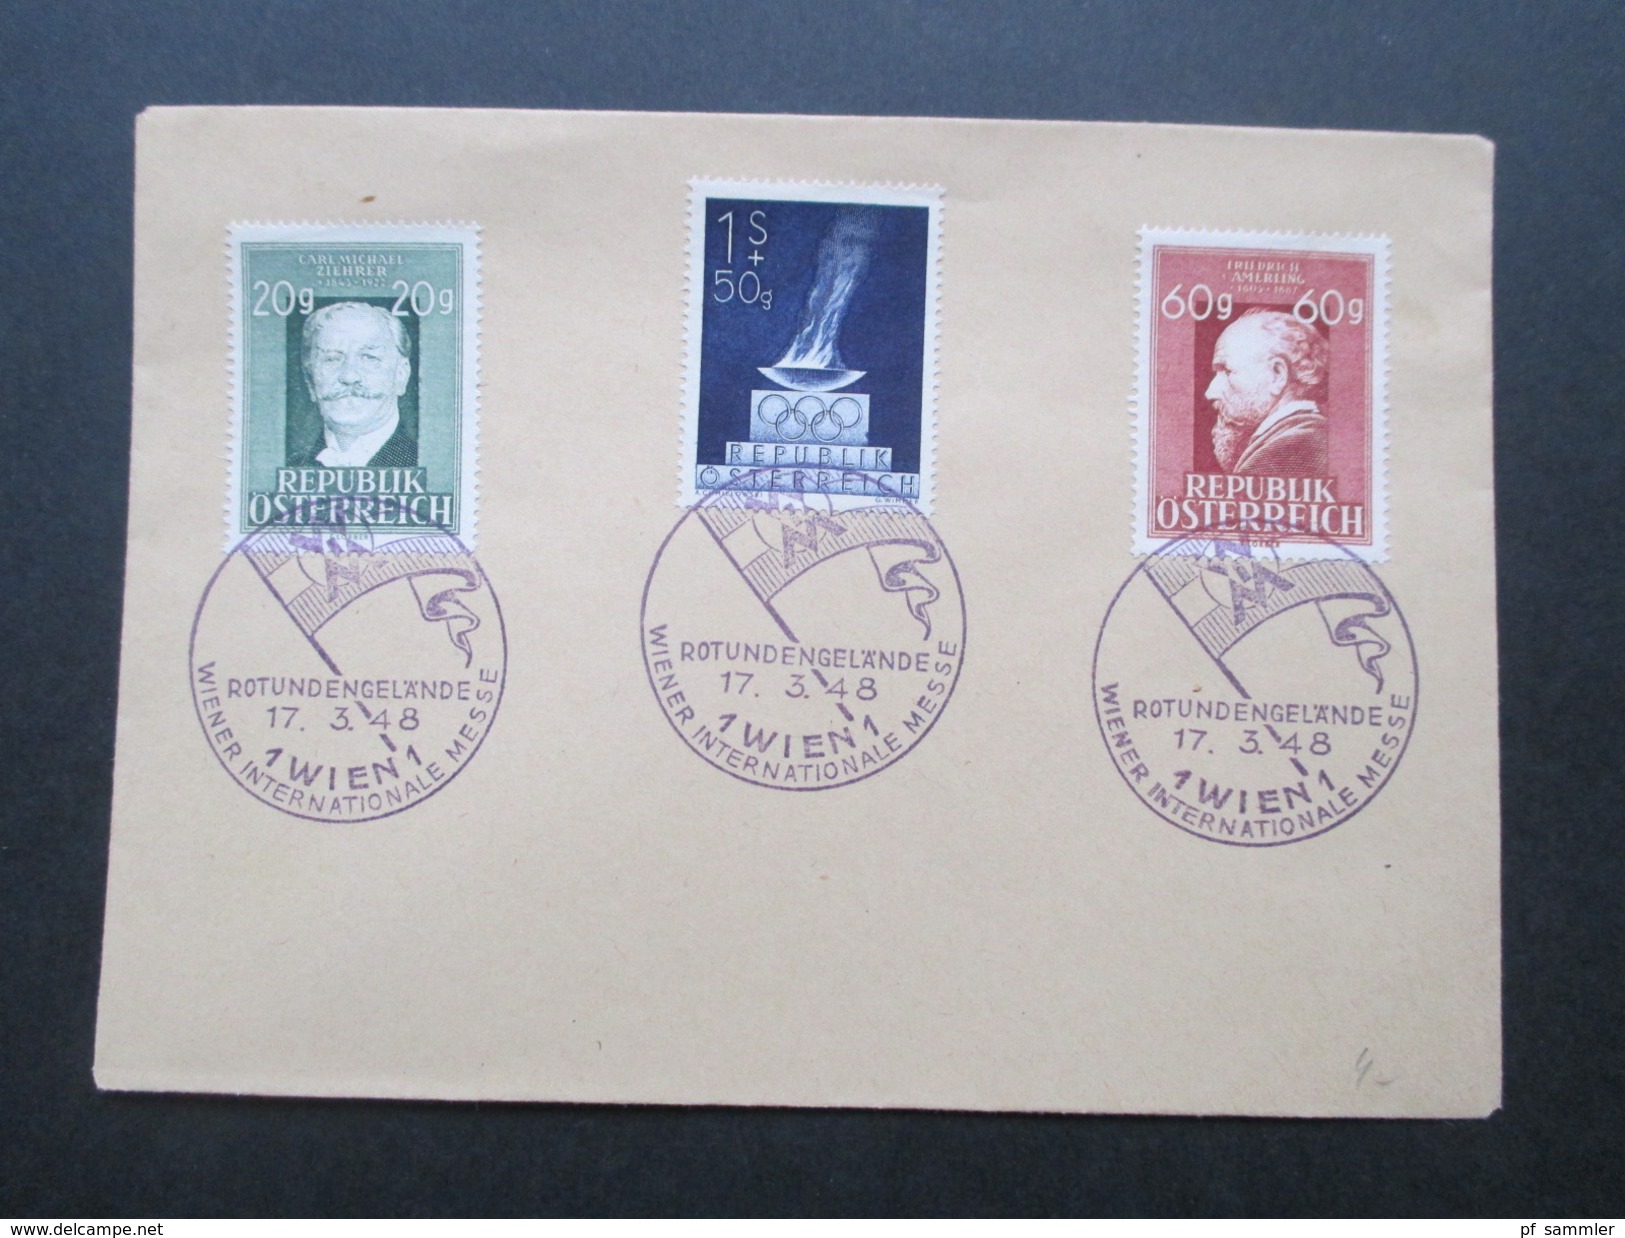 Österreich 17.3.1948 Sonderstempel Rotundengelände Wiener Internationale Messe. 2 Belege Mit Den Nr. 854, 855 Und 857 - Storia Postale